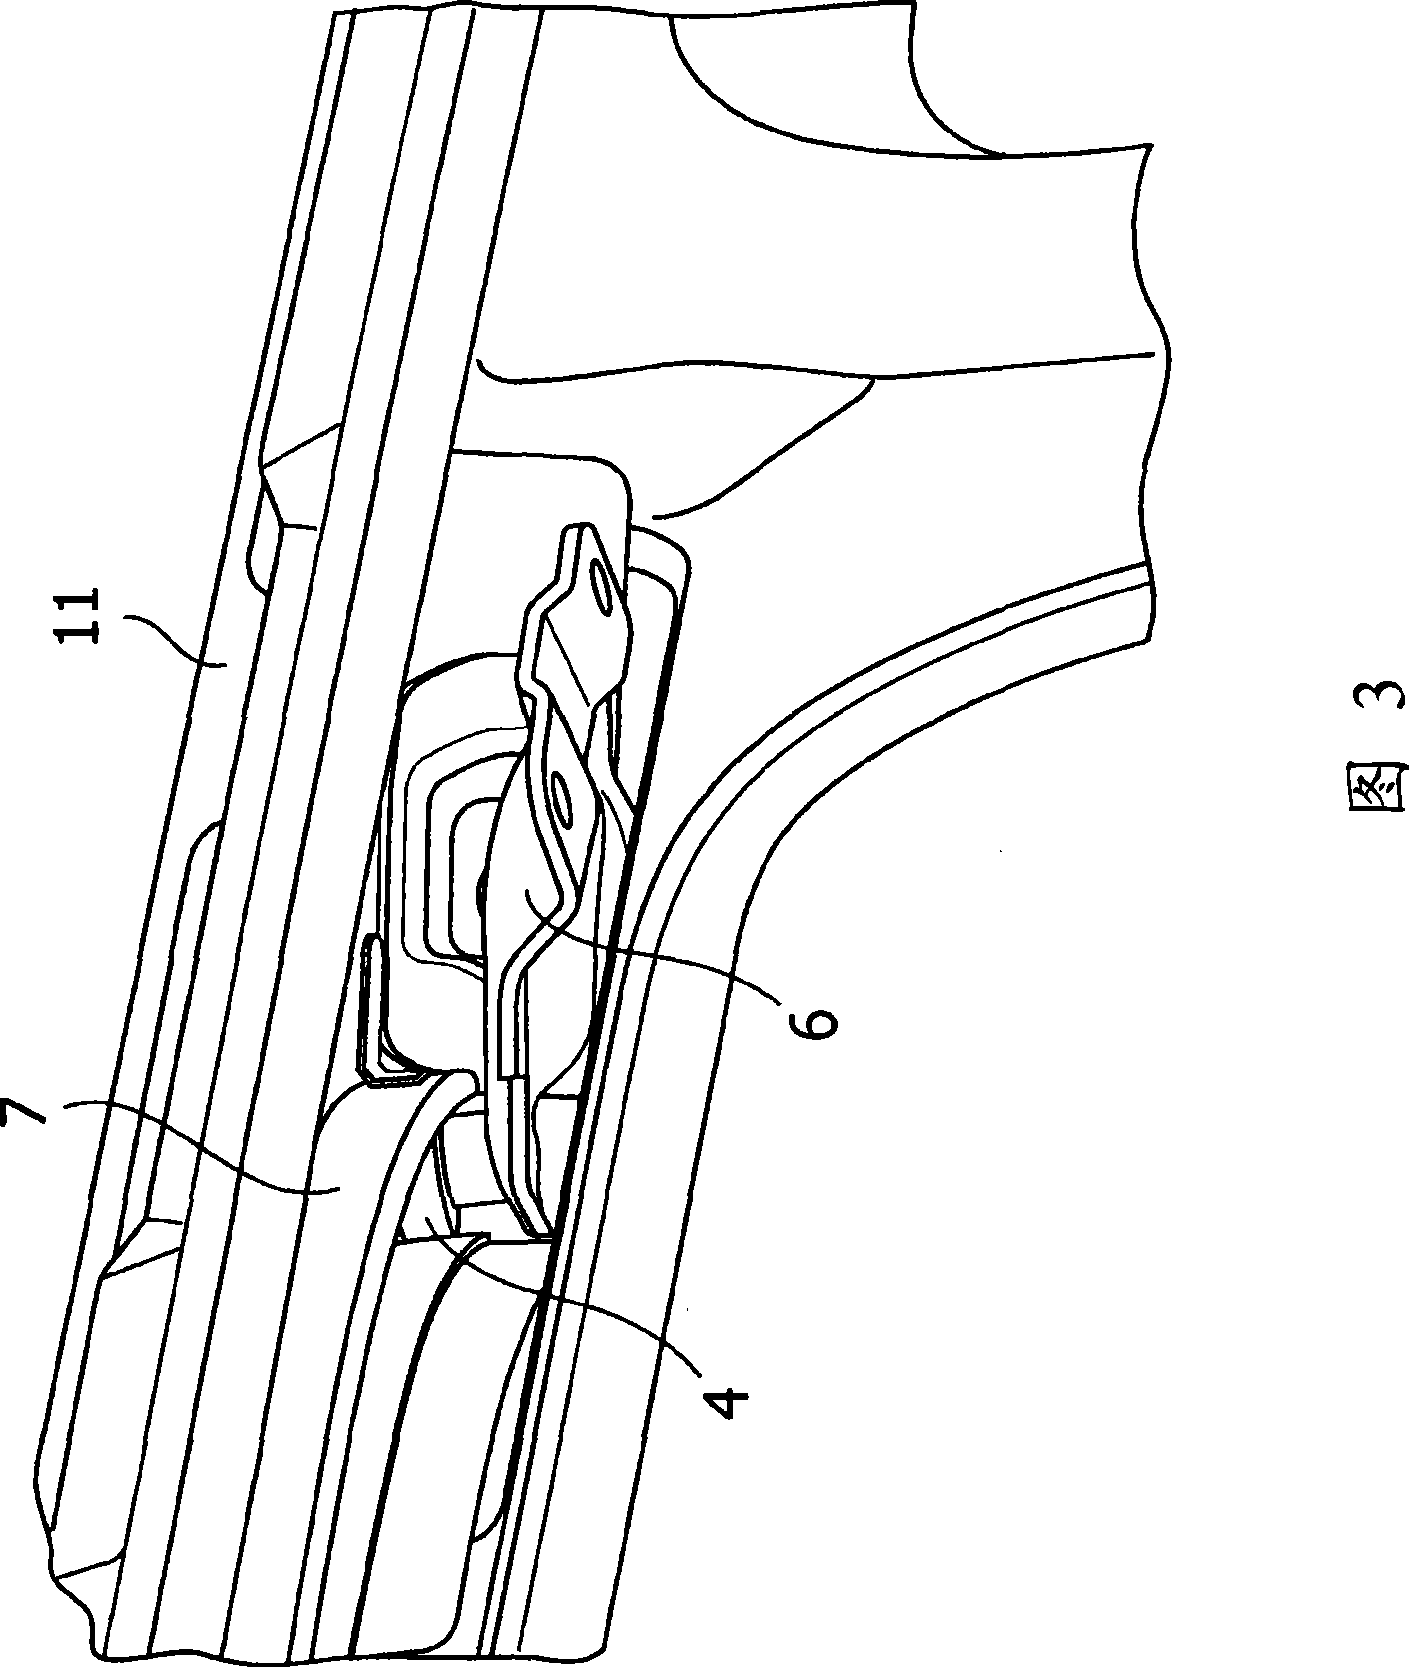 Vehicle slide-door constraint structure